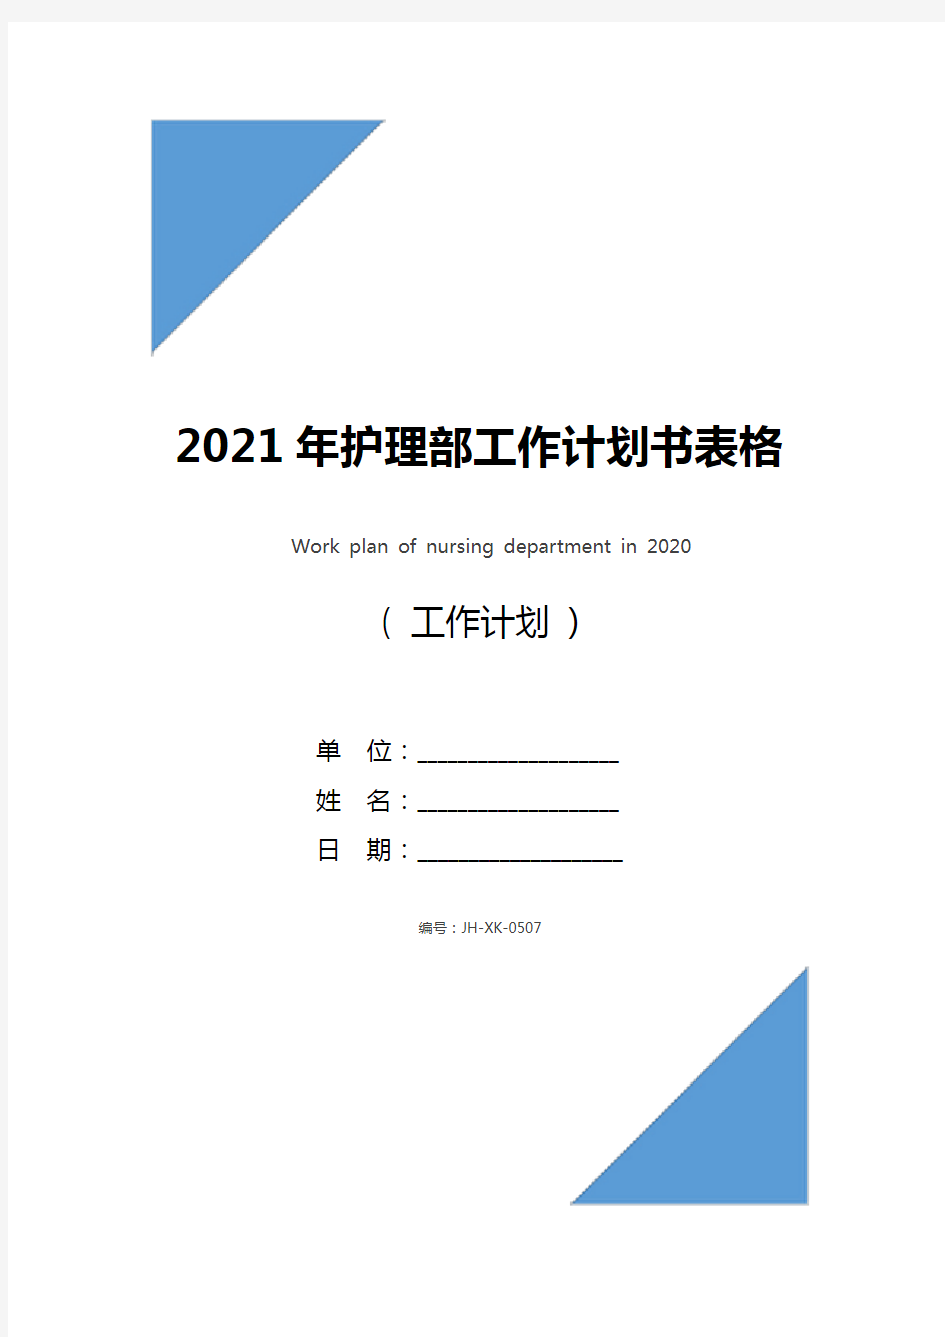 2021年护理部工作计划书表格(标准版)